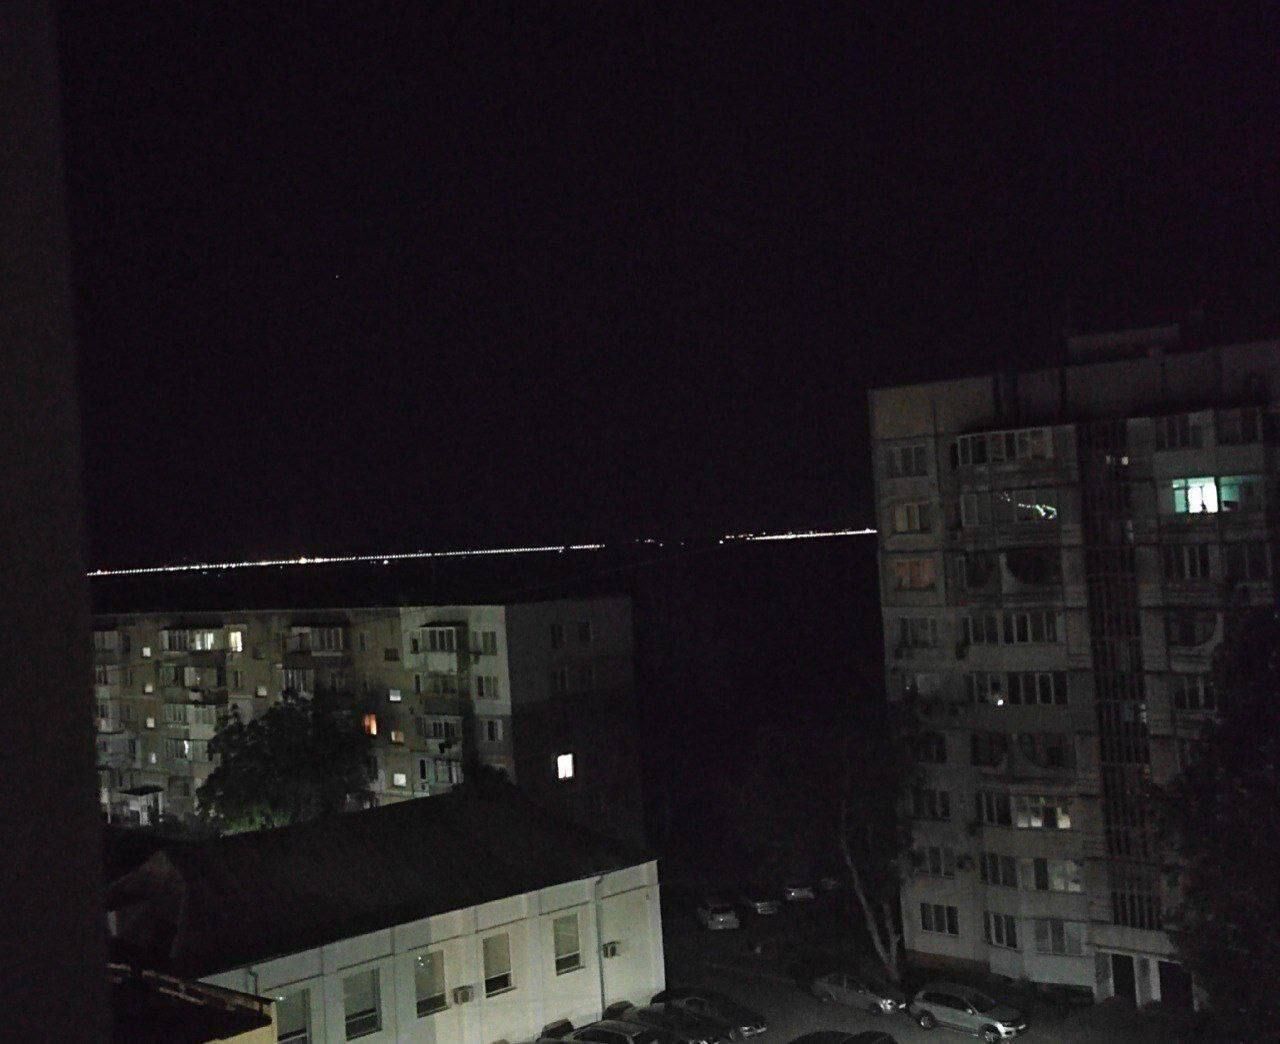 "Плита моста съехала вниз": очевидцы рассказали о моменте и последствиях взрыва на Крымском мосту. Фото и видео